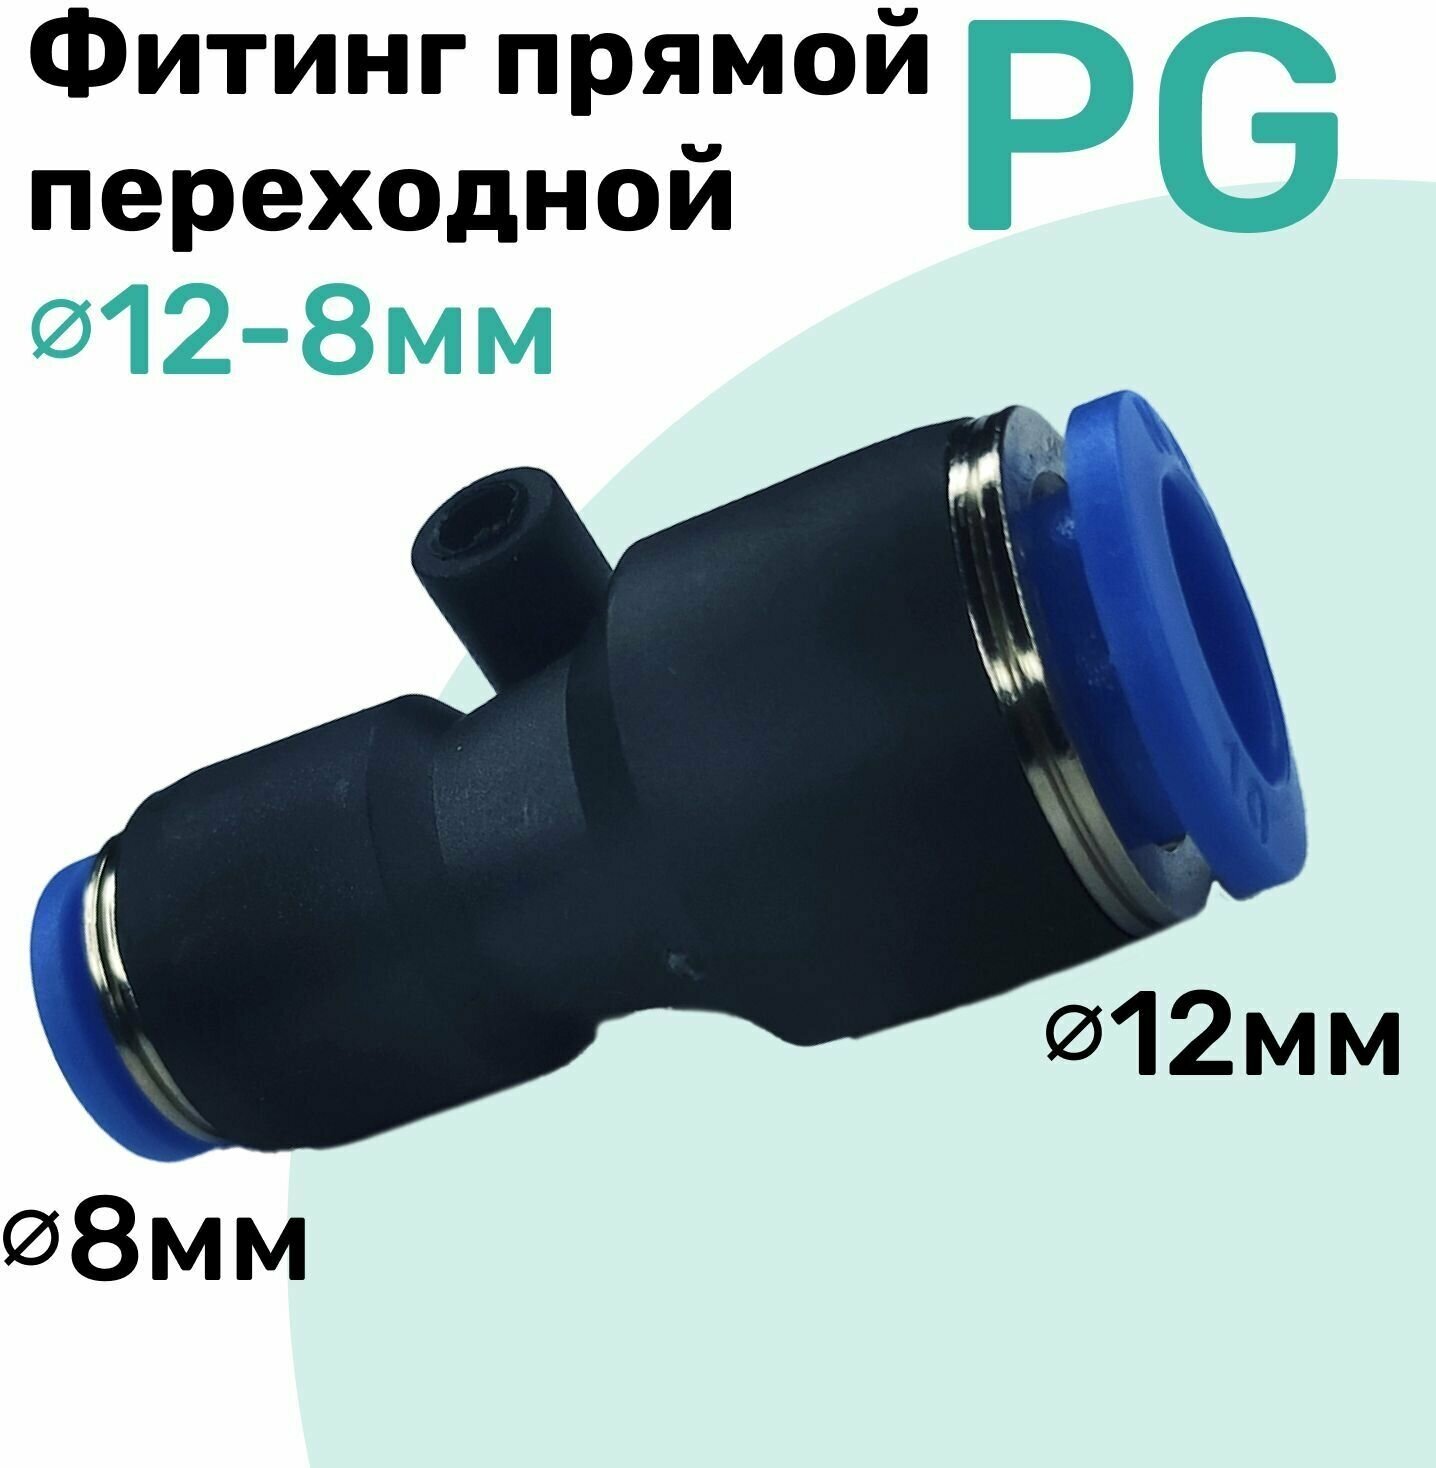 Фитинг прямой переходной цанговый PG 12-8 мм Пневмофитинг NBPT